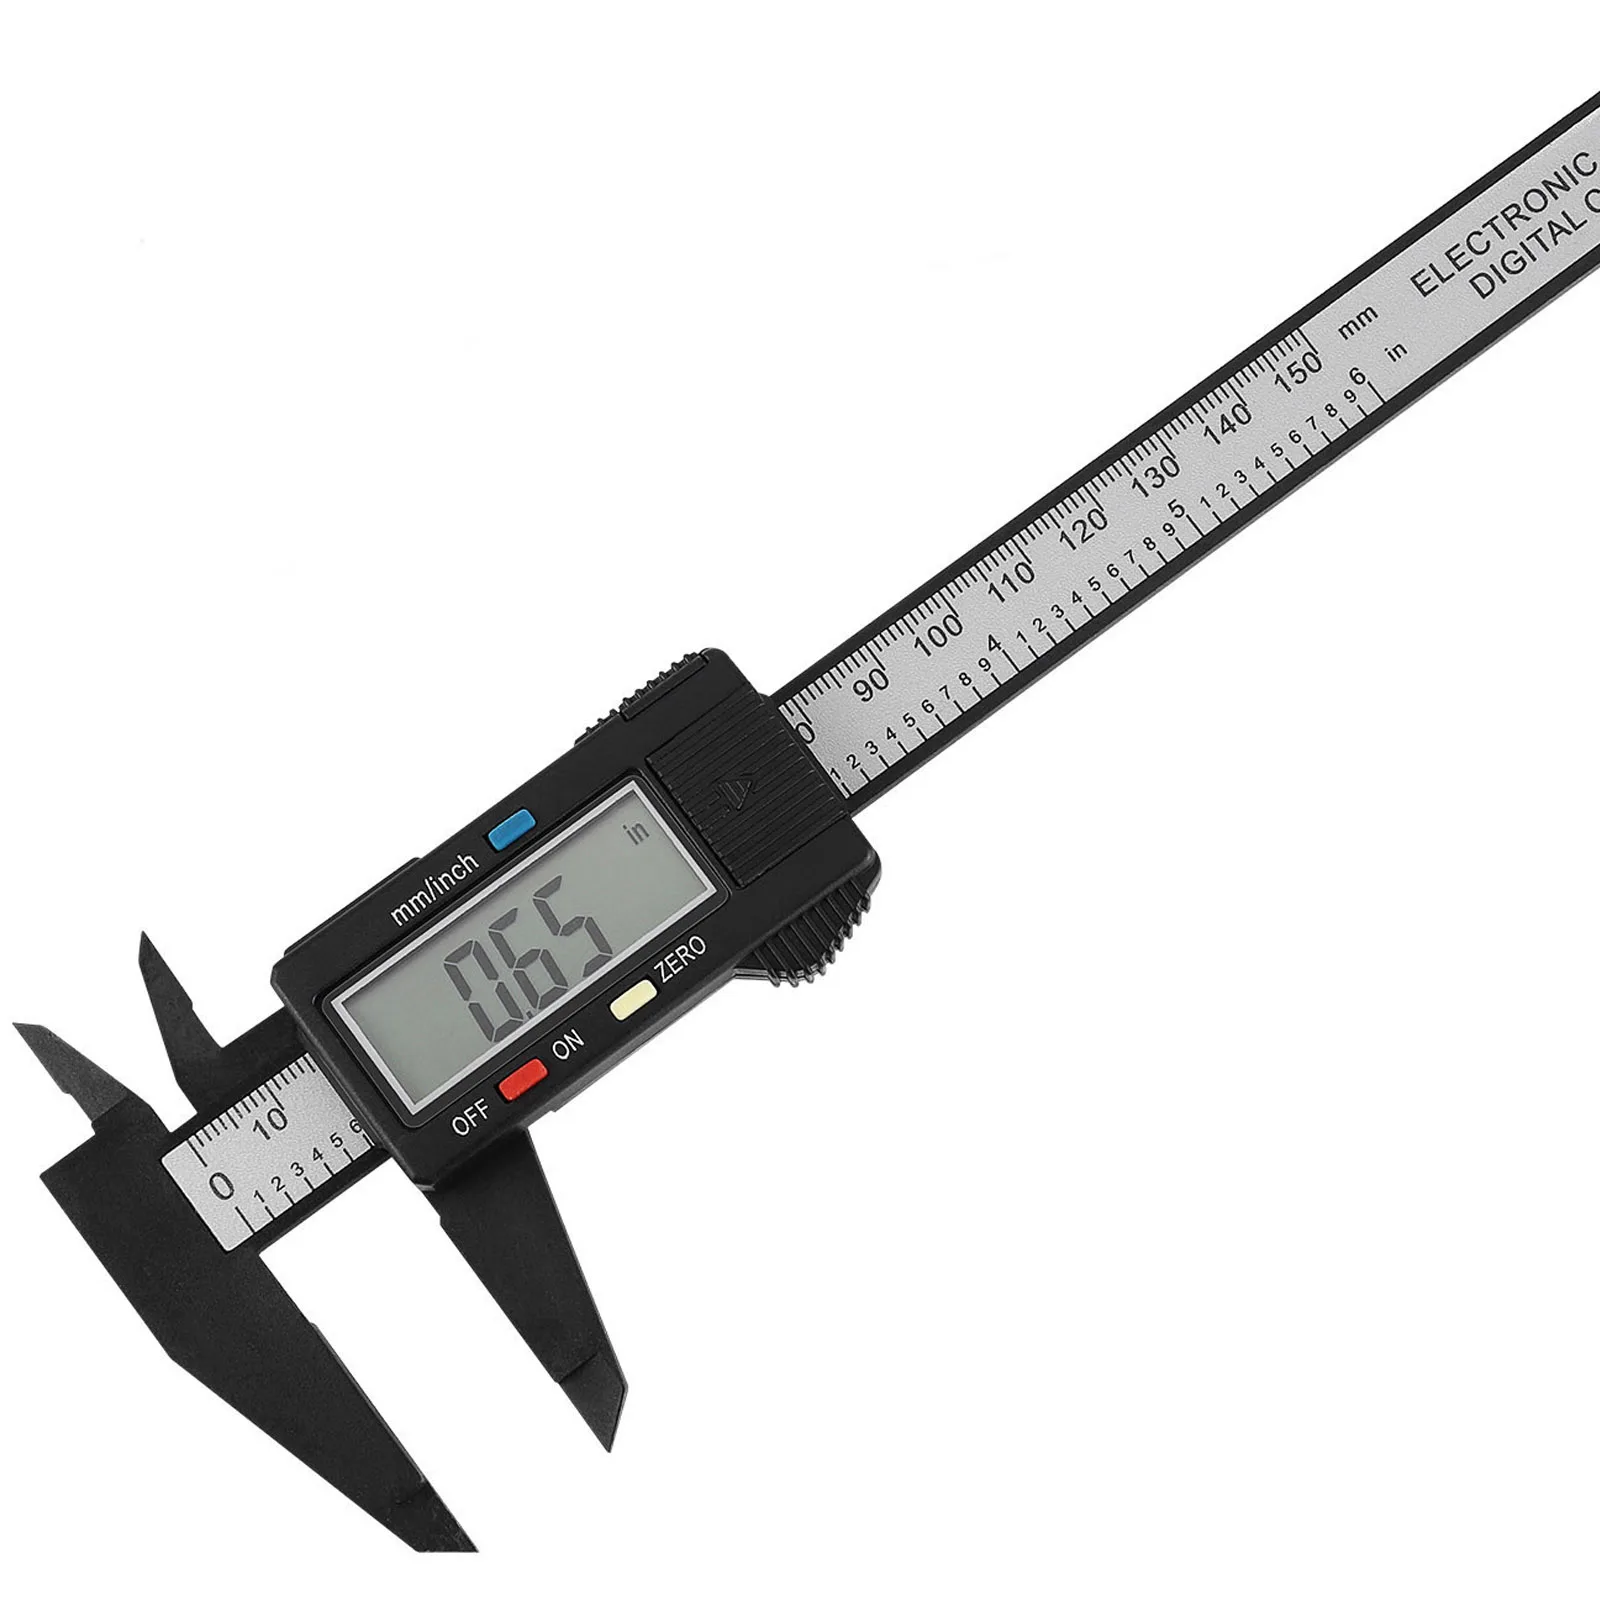 Digital Caliper Electronic Vernier Micrometer Gauge LCD Measuring Ruler